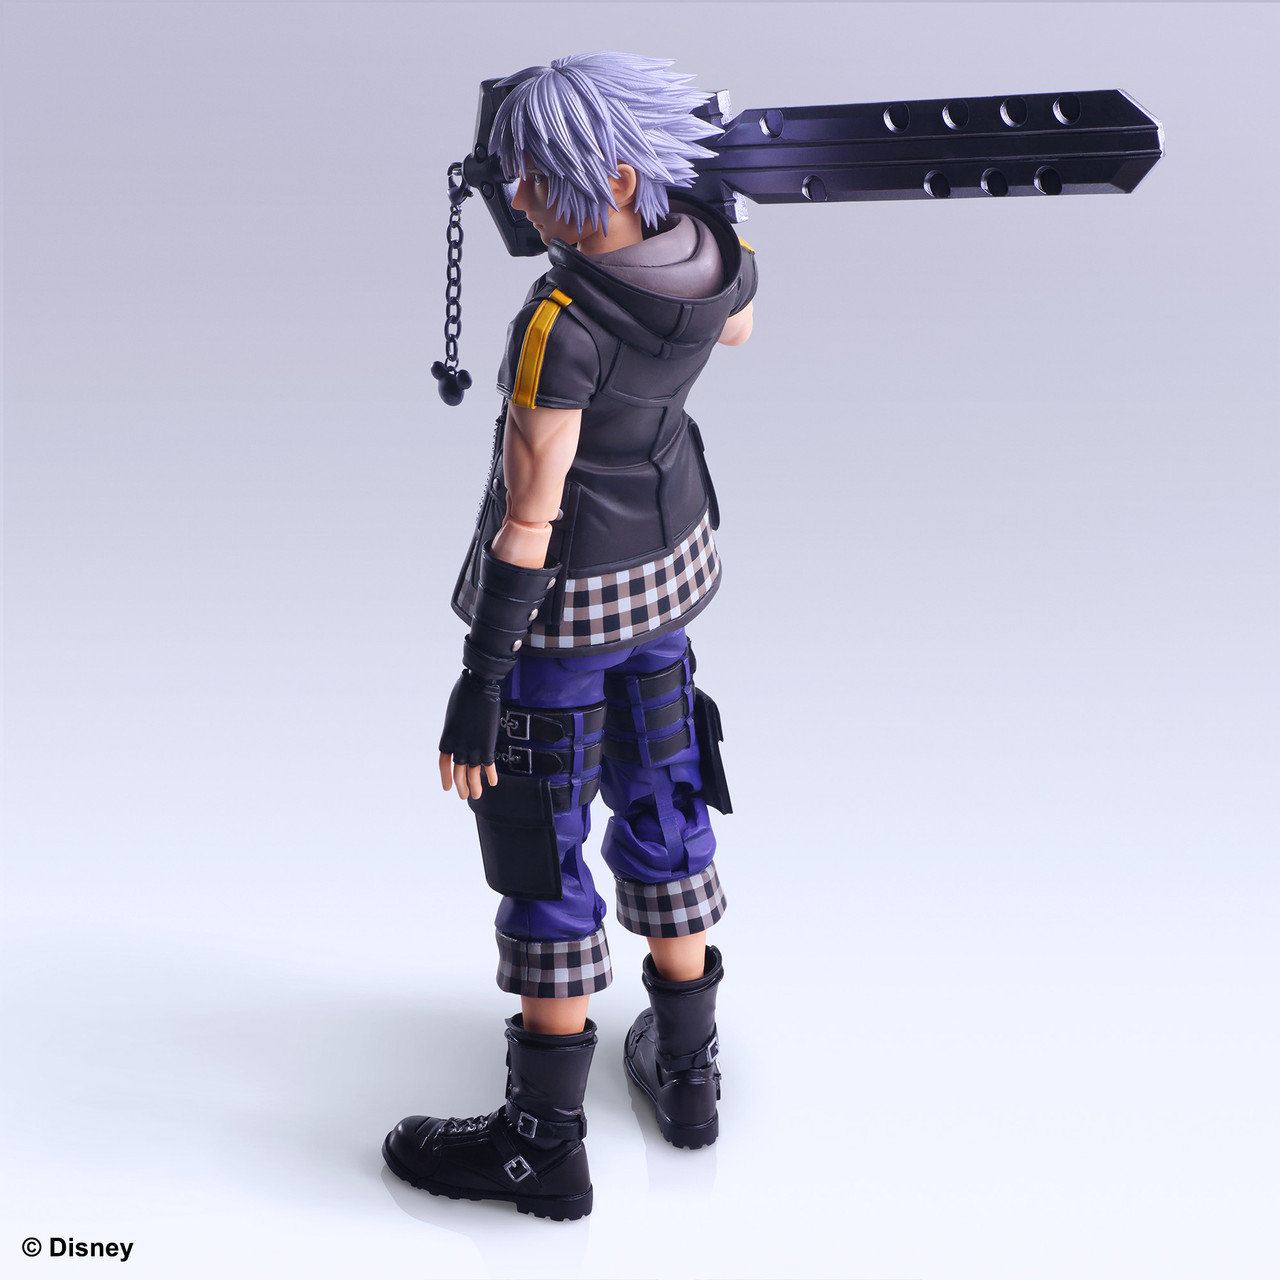 Kingdom Hearts Avatar Trading Arts Figure Mini Riku Square enix Japan